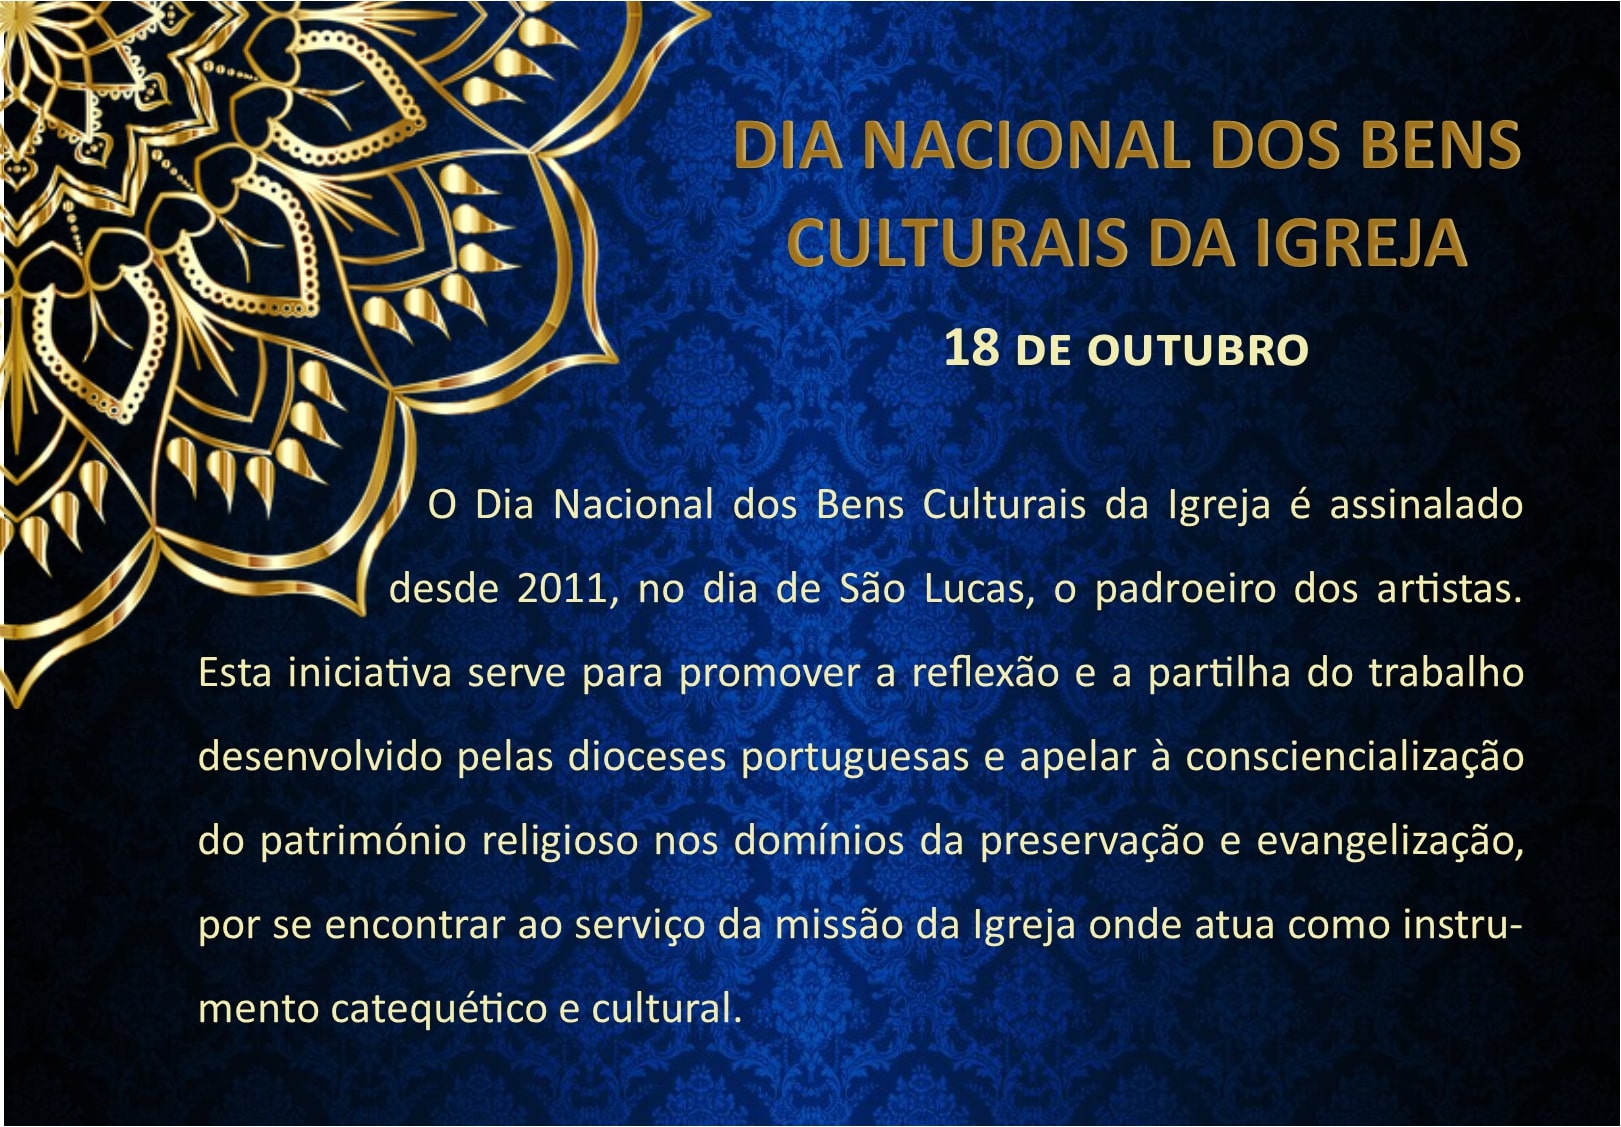 Dia Nacional dos Bens Culturais da Igreja